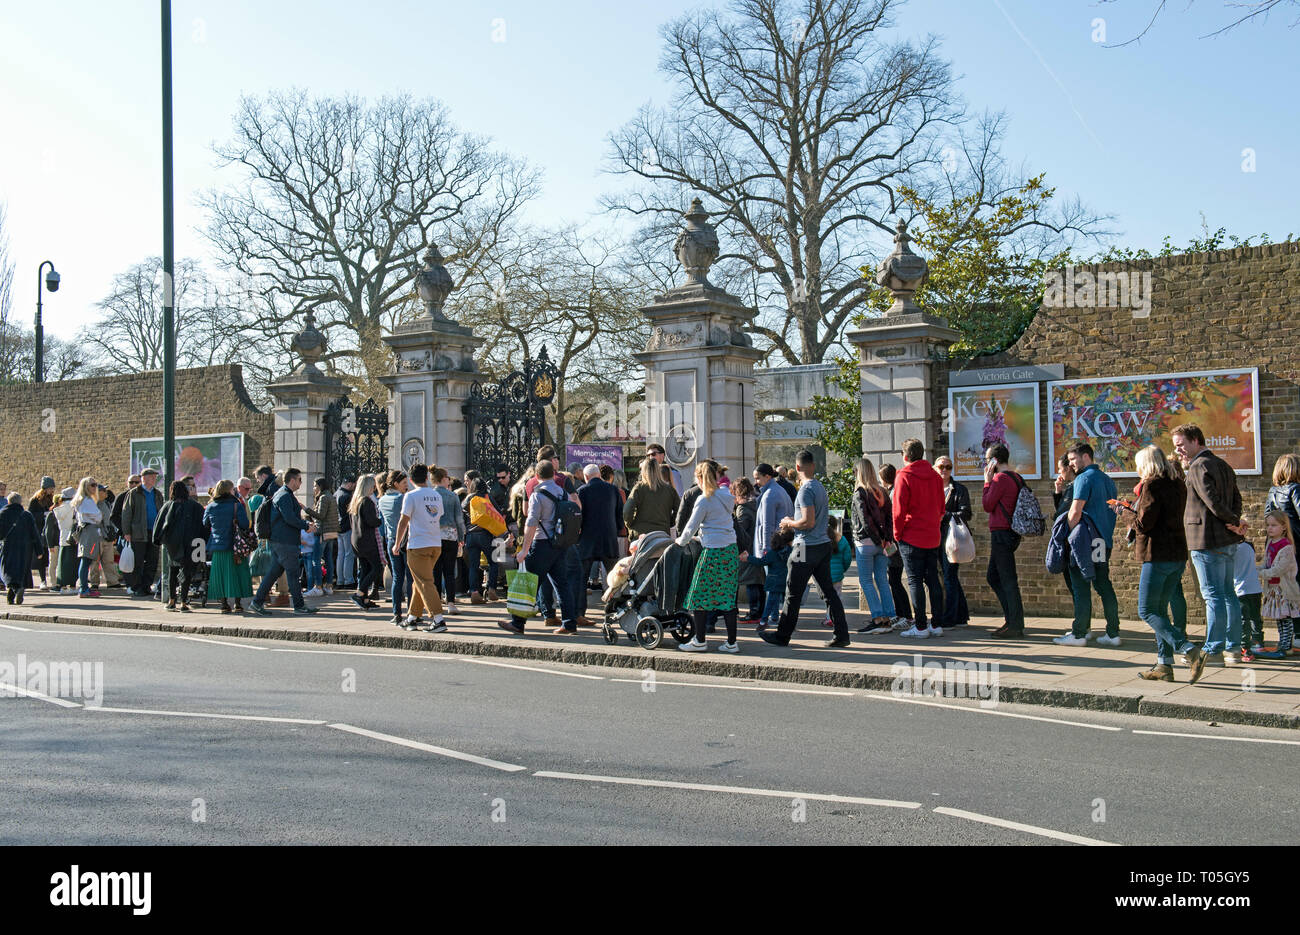 La gente in coda per entrare Kew Gardens presso il Victoria Gate in una giornata di sole in febbraio. Foto Stock